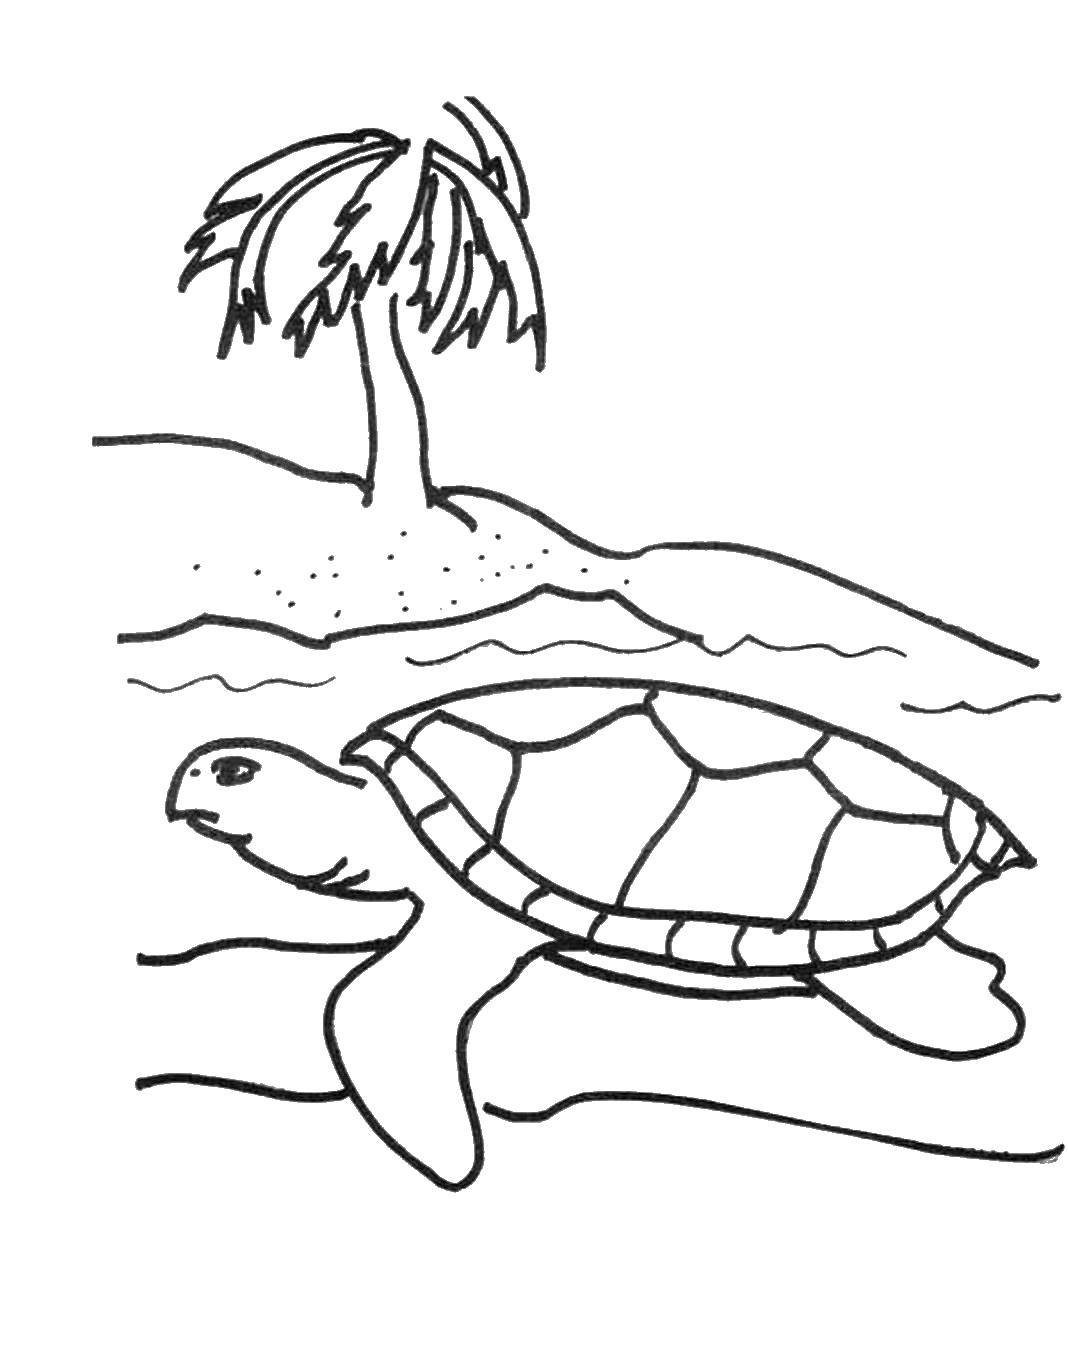 Название: Раскраска Морская черепашка. Категория: Животные. Теги: Рептилия, черепаха.